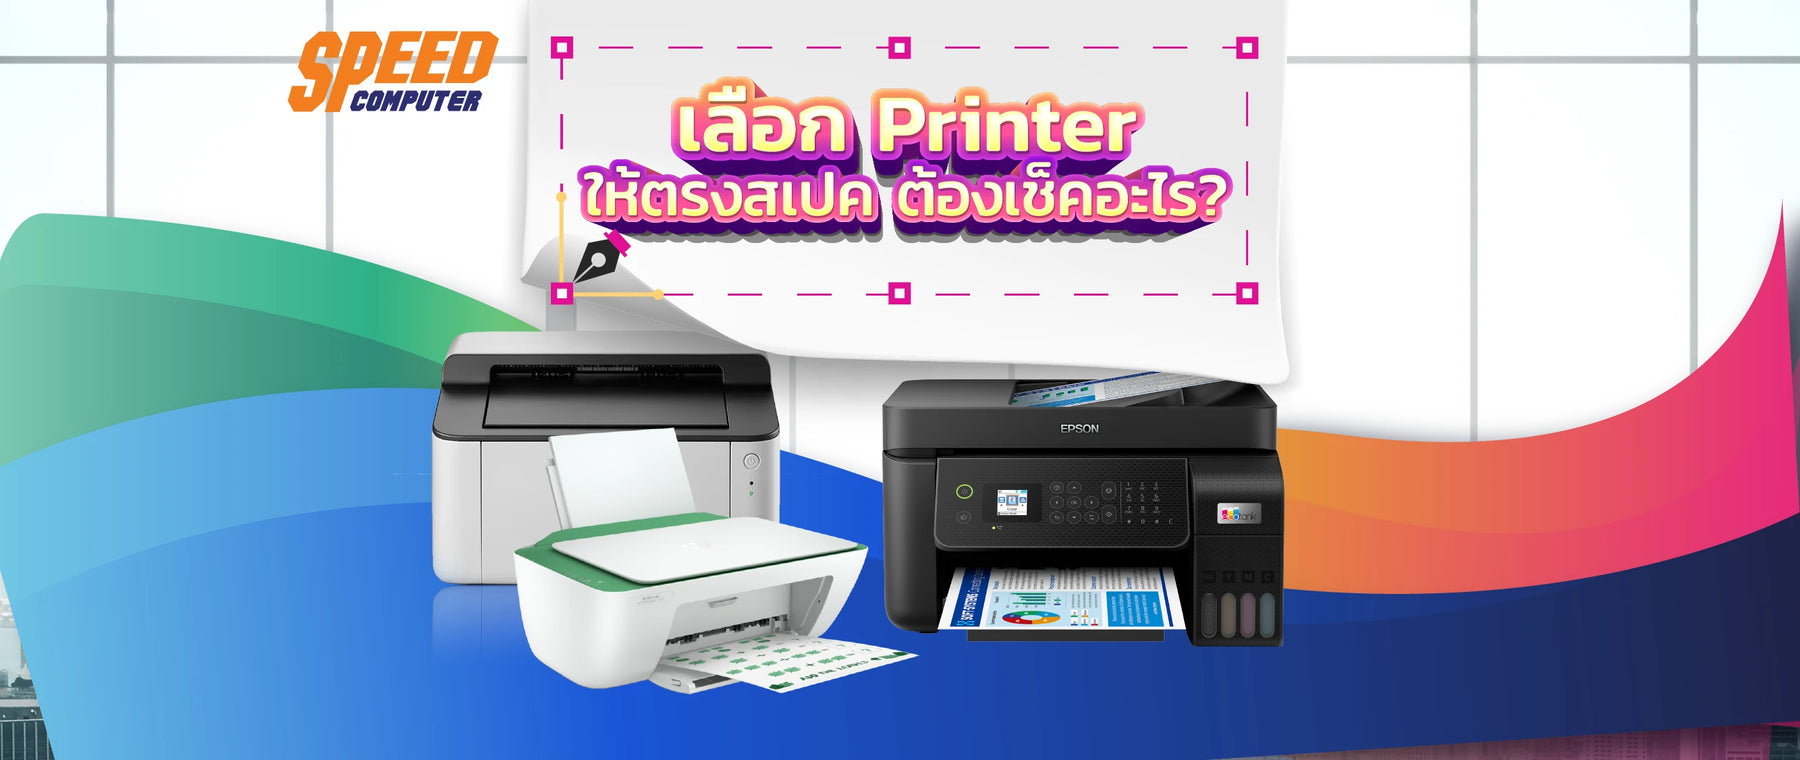 เลือก Printer ให้ตรงสเปค ต้องเช็คอะไร